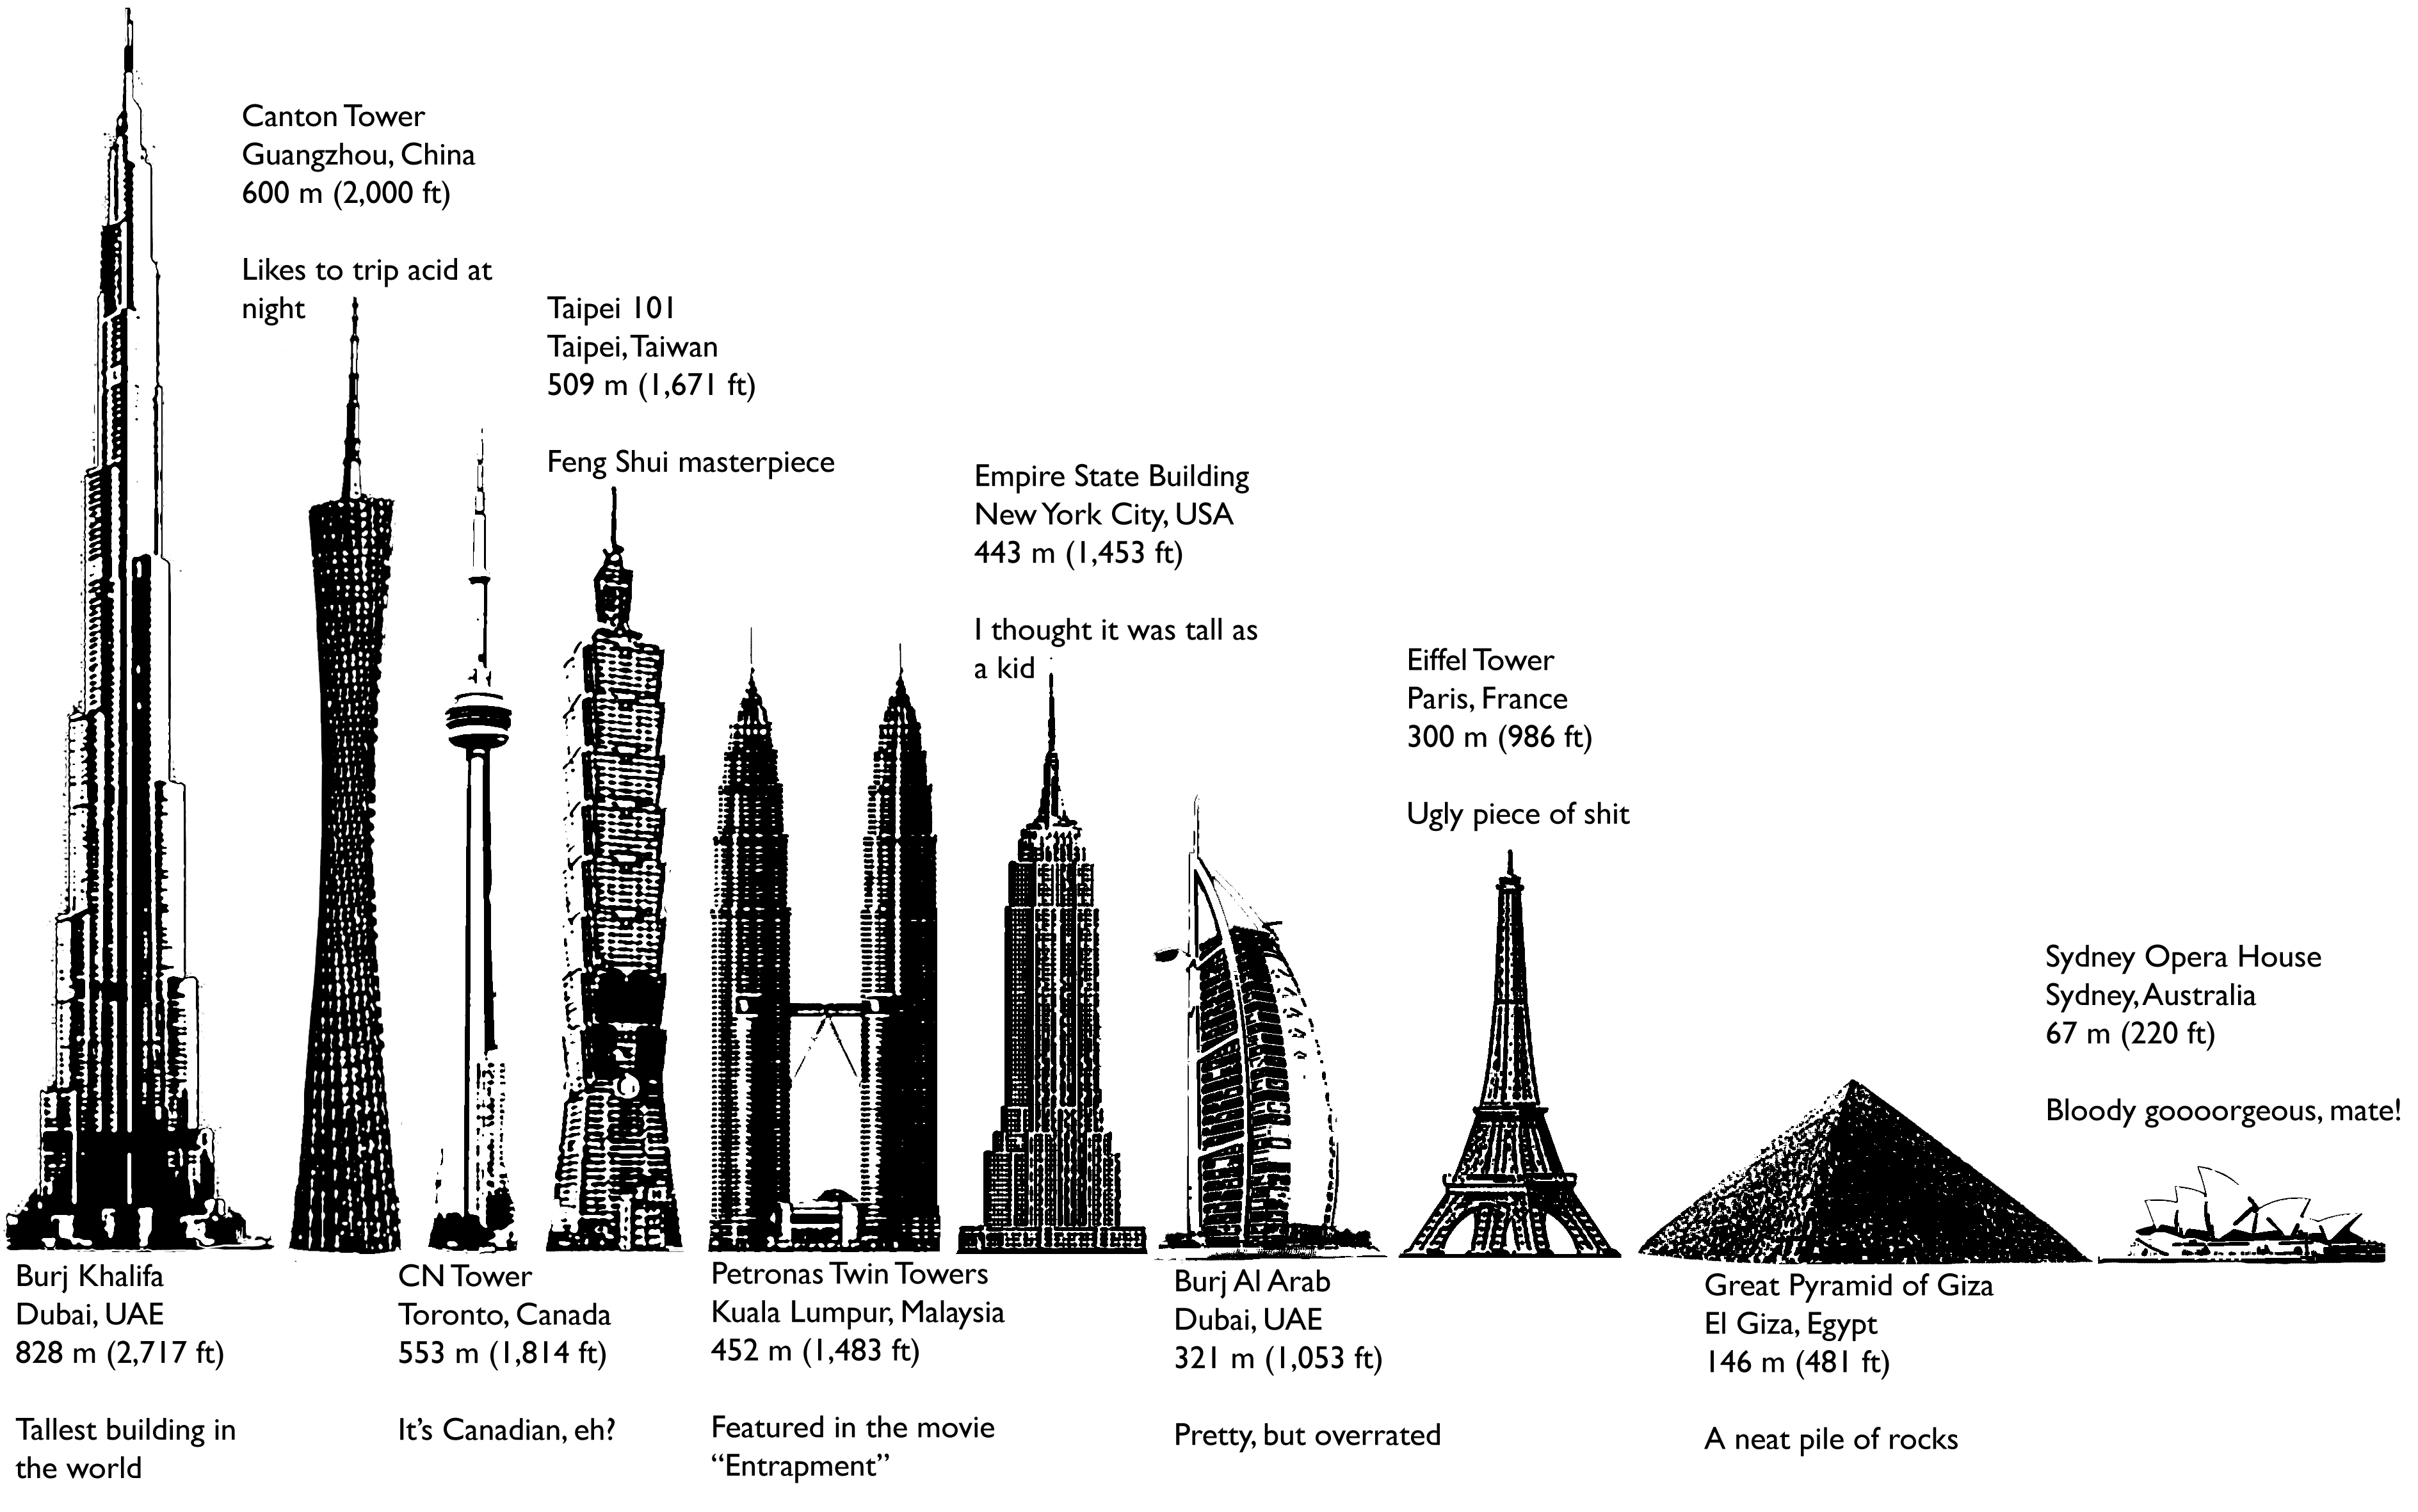 Eiffeltower vs. Burj Khalifa - Comparison of sizes